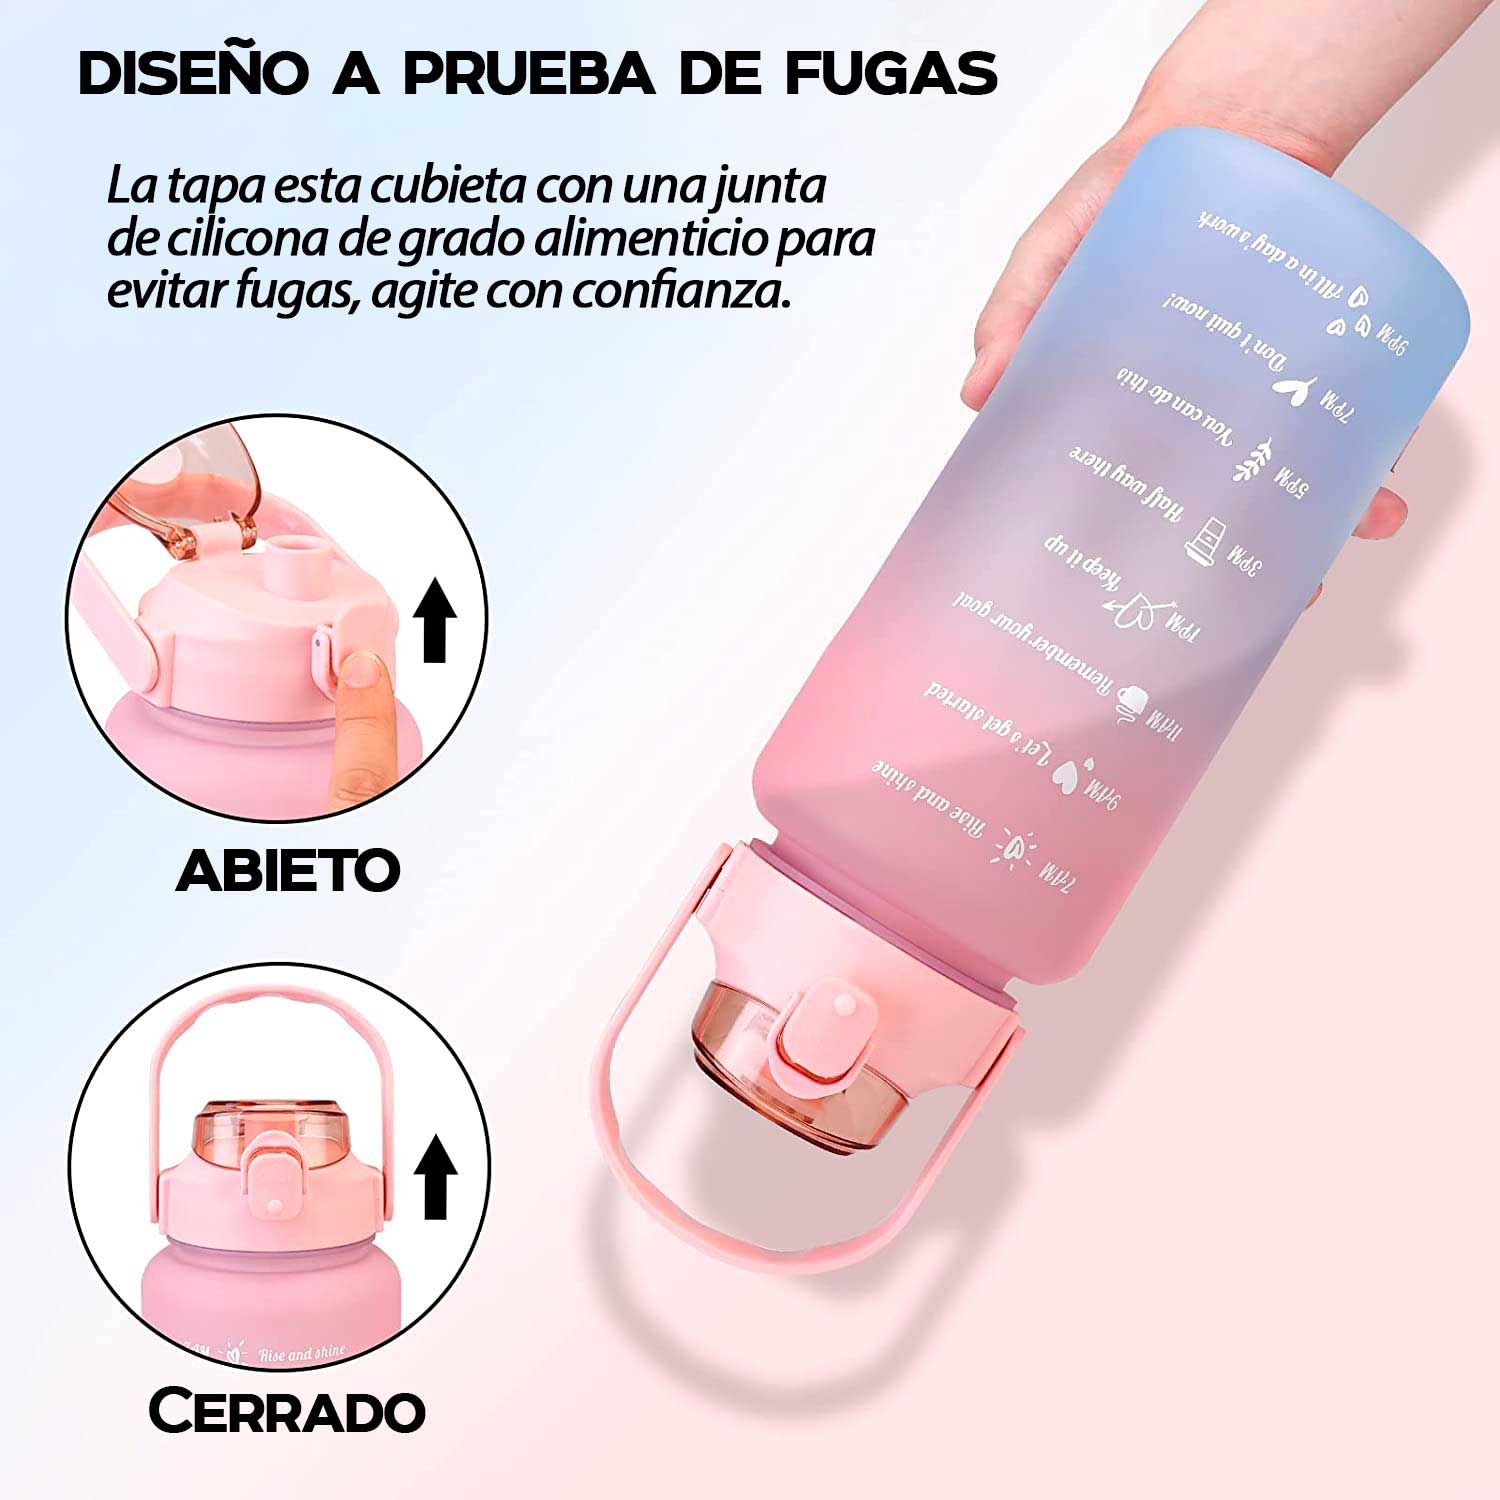 Termo o botella de agua con diseños 2 Litros motivacional Rosado –  Importech Venezuela, C.A.